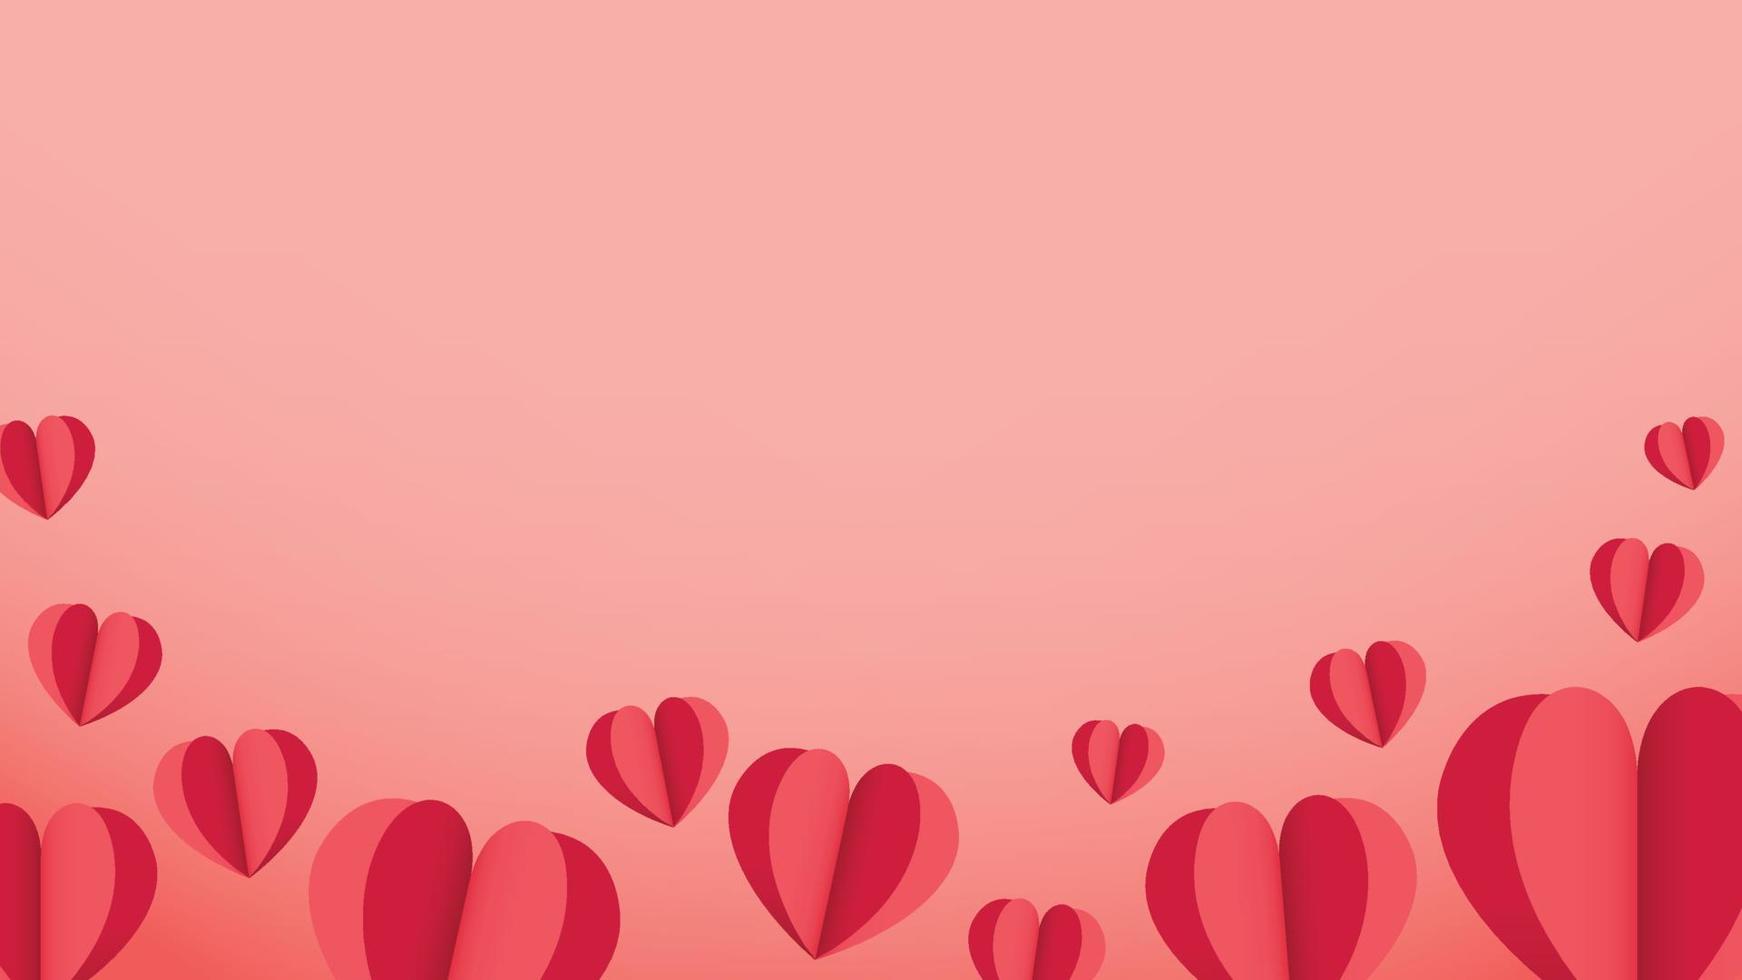 coeurs 3d décoratifs amour papier découpé en éléments de conception rose clip art pour les vacances de la Saint-Valentin, mariage, fête d'anniversaire. vecteur isolé